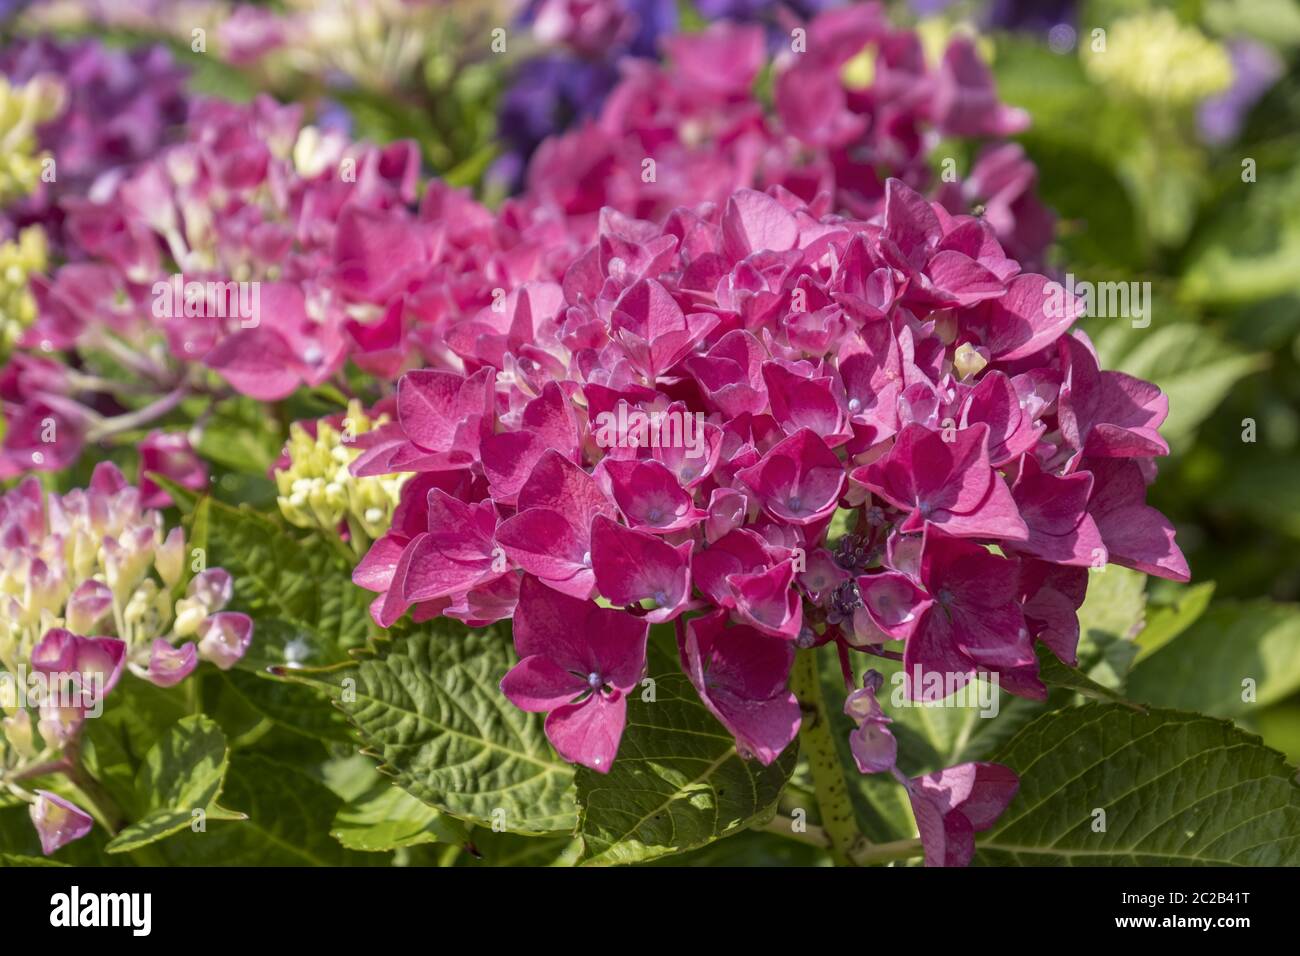 hydrangea blossom Stock Photo